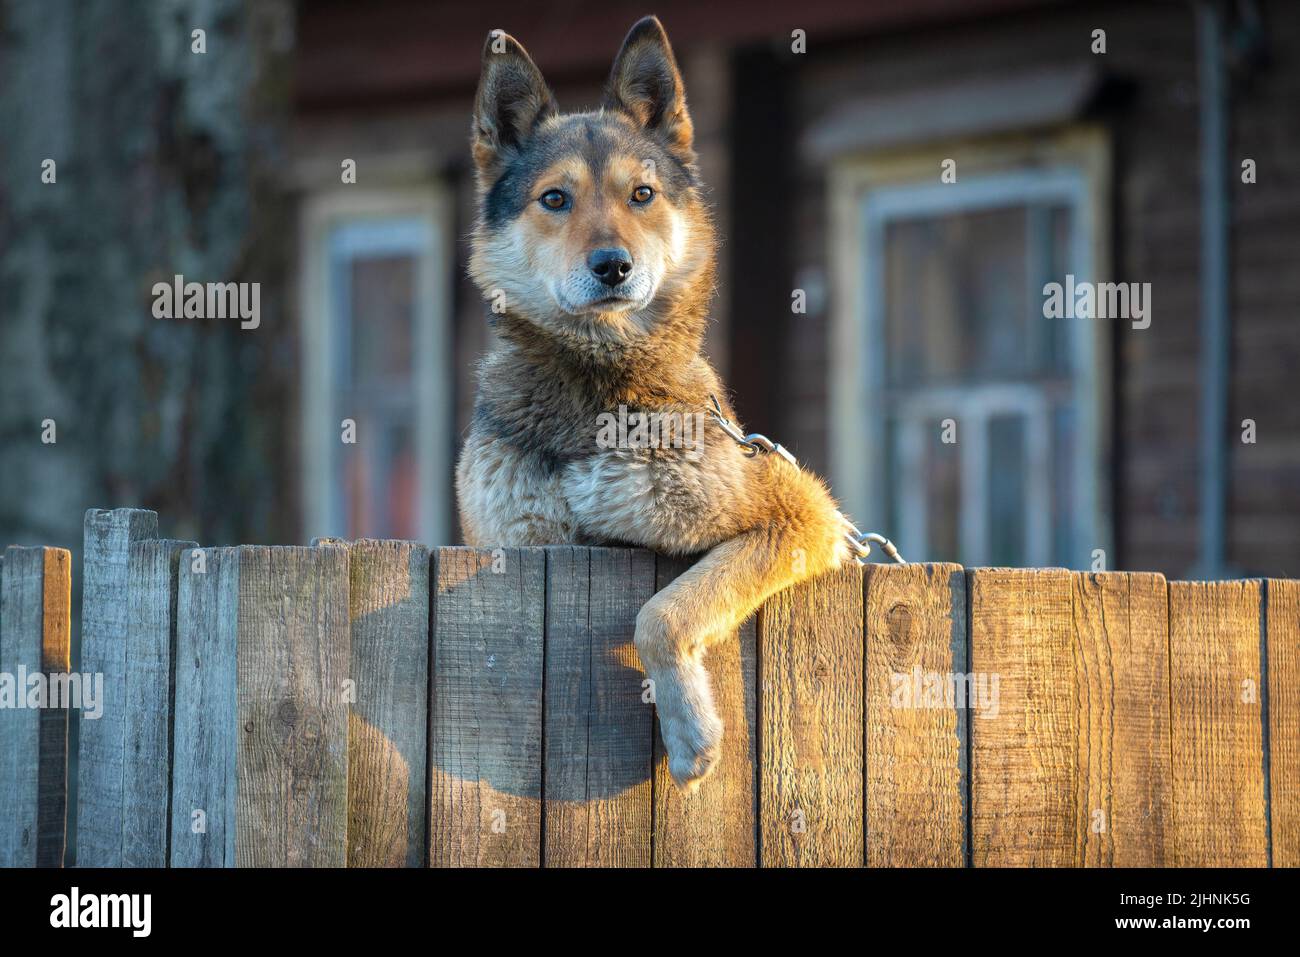 Retrato de un perro de patio mirando desde detrás de una valla Foto de stock